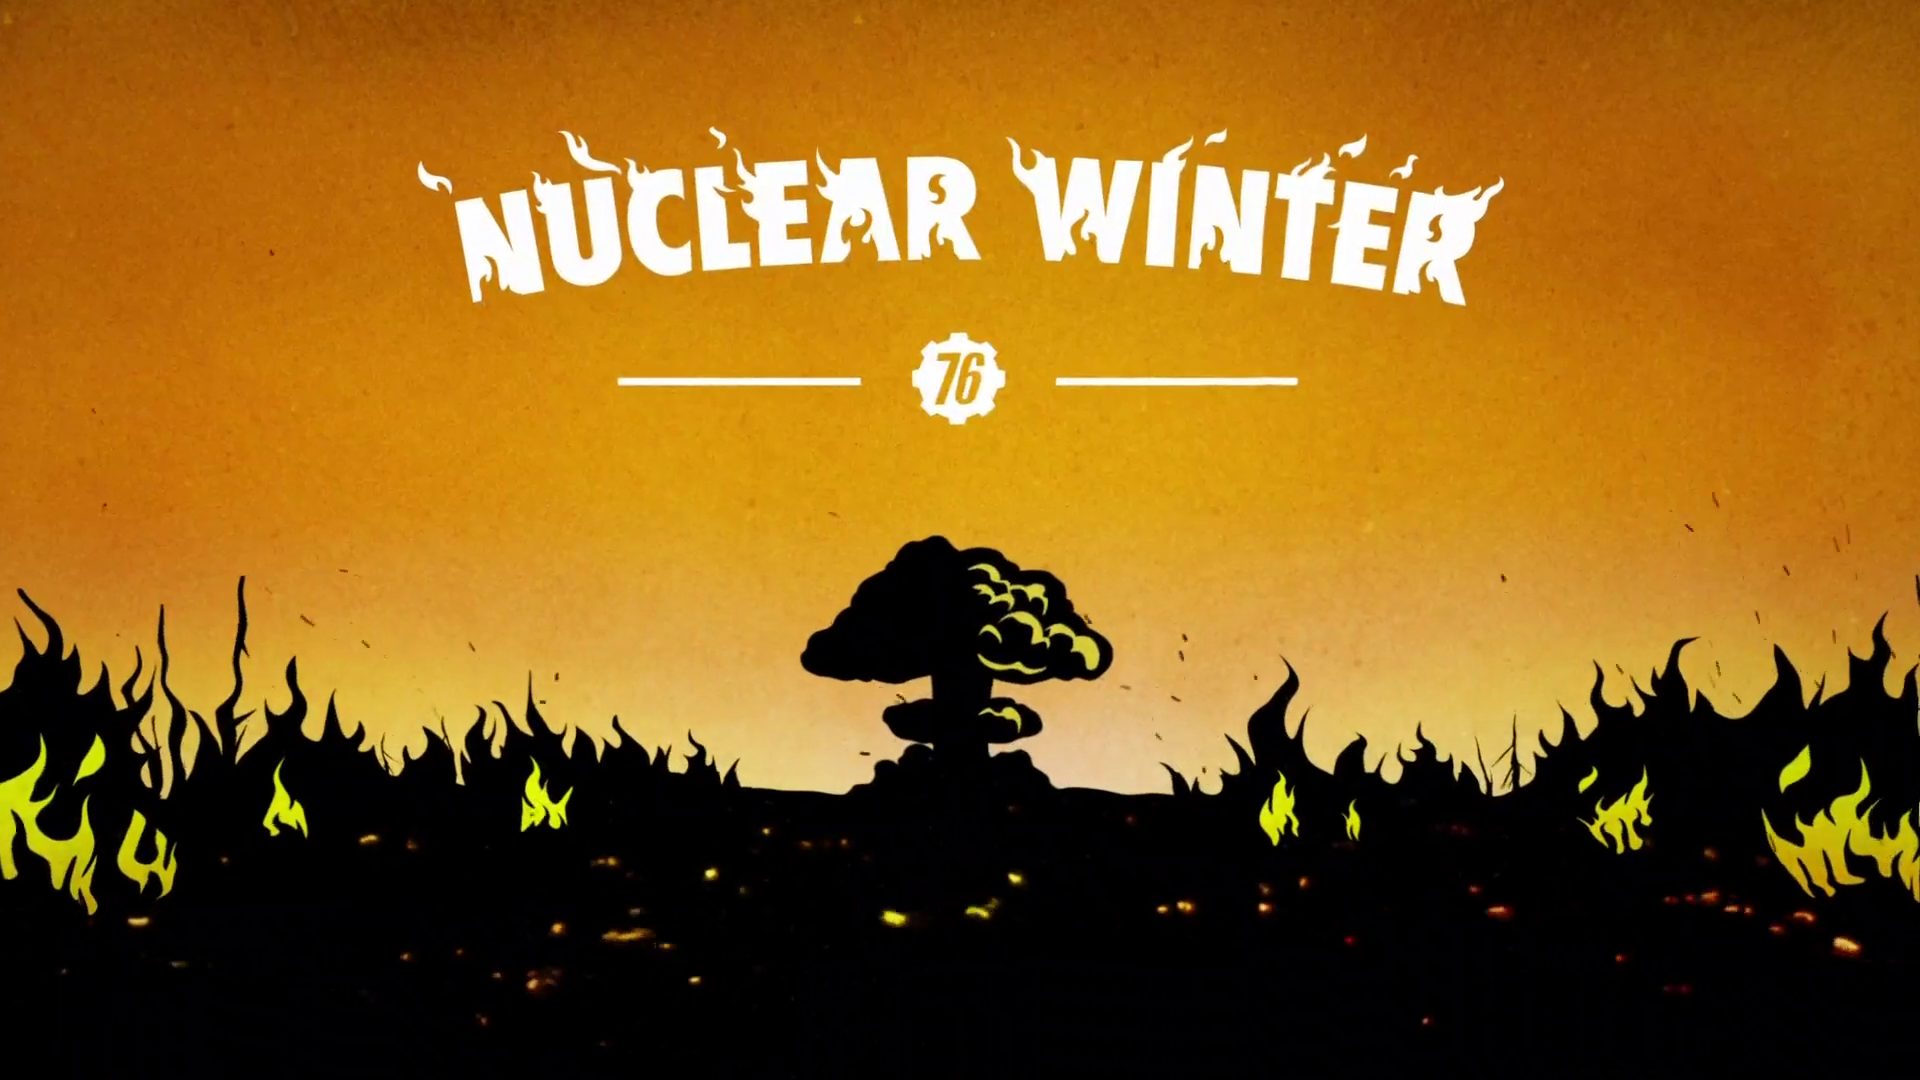 Invierno Nuclear